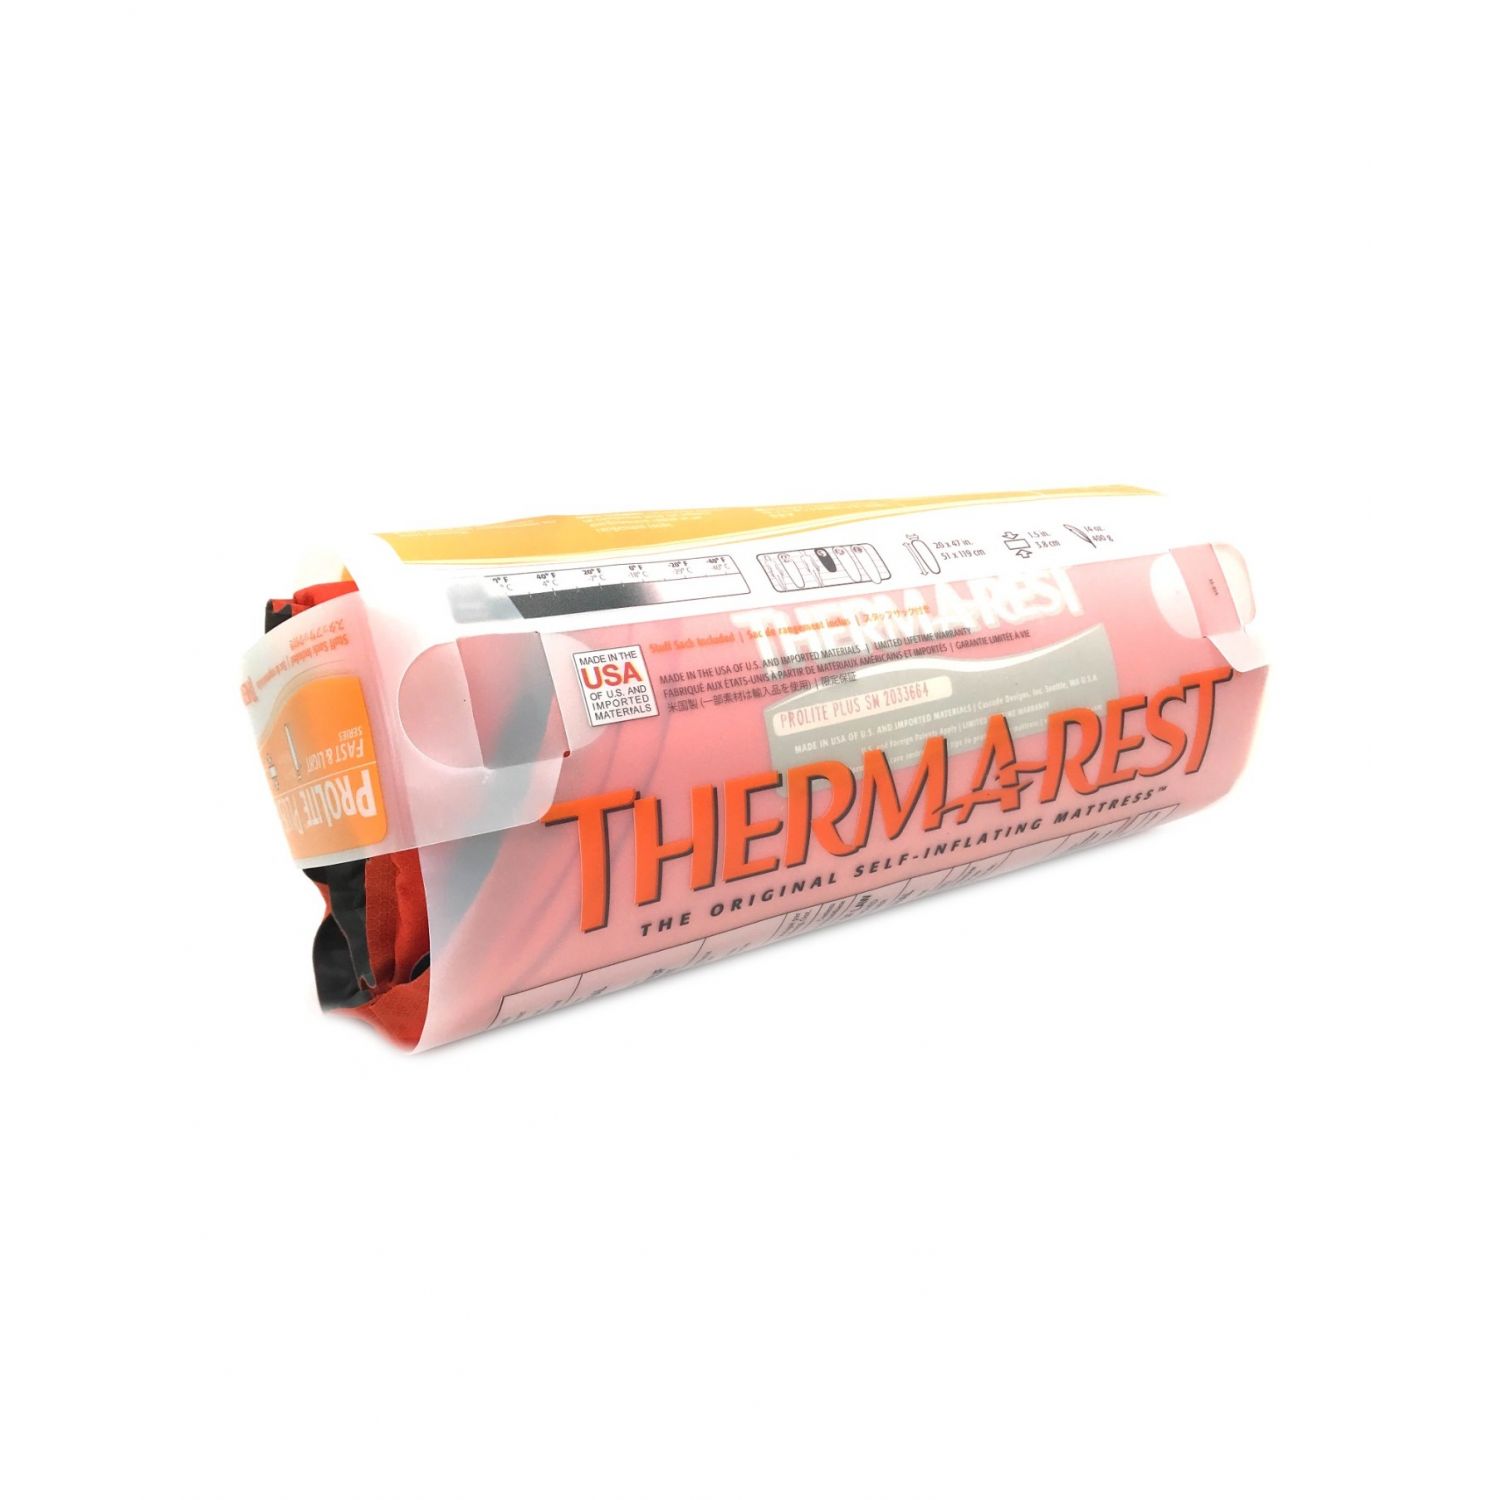 THERMAREST (サーマレスト) プロライトプラス マットレス 幅51×長さ119×高さ3.8cm